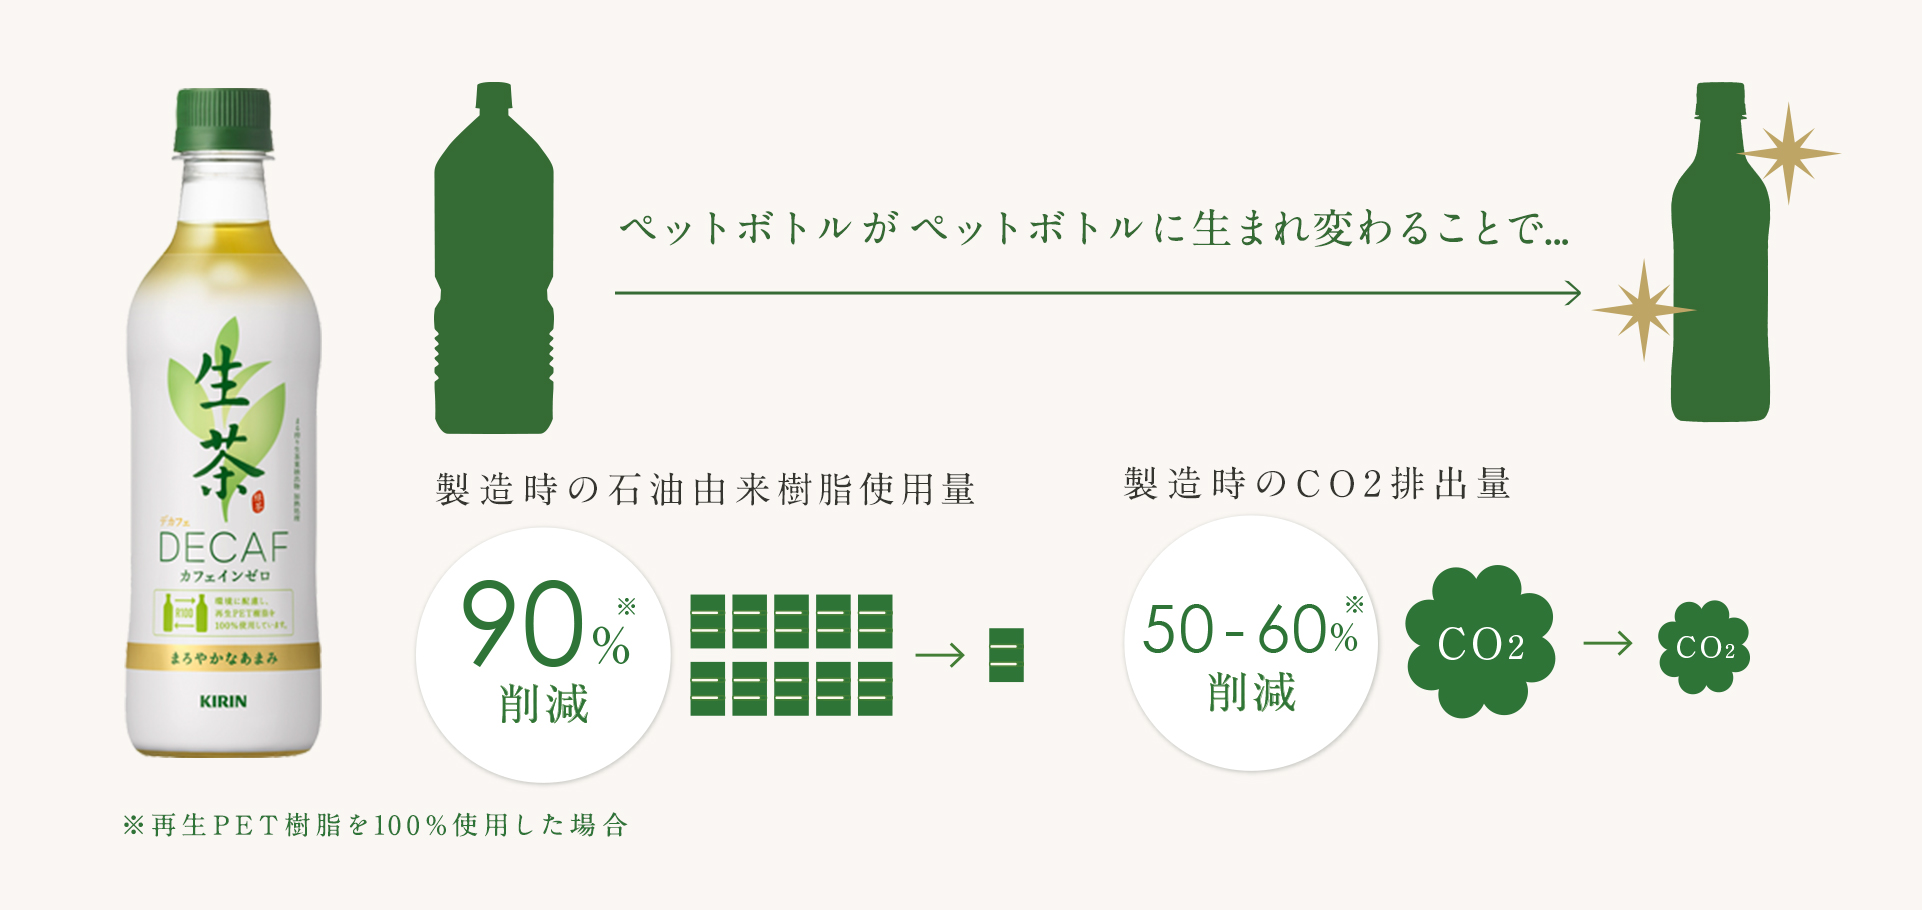 ペットボトルがペットボトルに生まれ変わることで... 製造時の石油由来樹脂使用量90&削減 ※再生PET樹脂を100%使用した場合 製造時のCO2排出量50〜60%削減